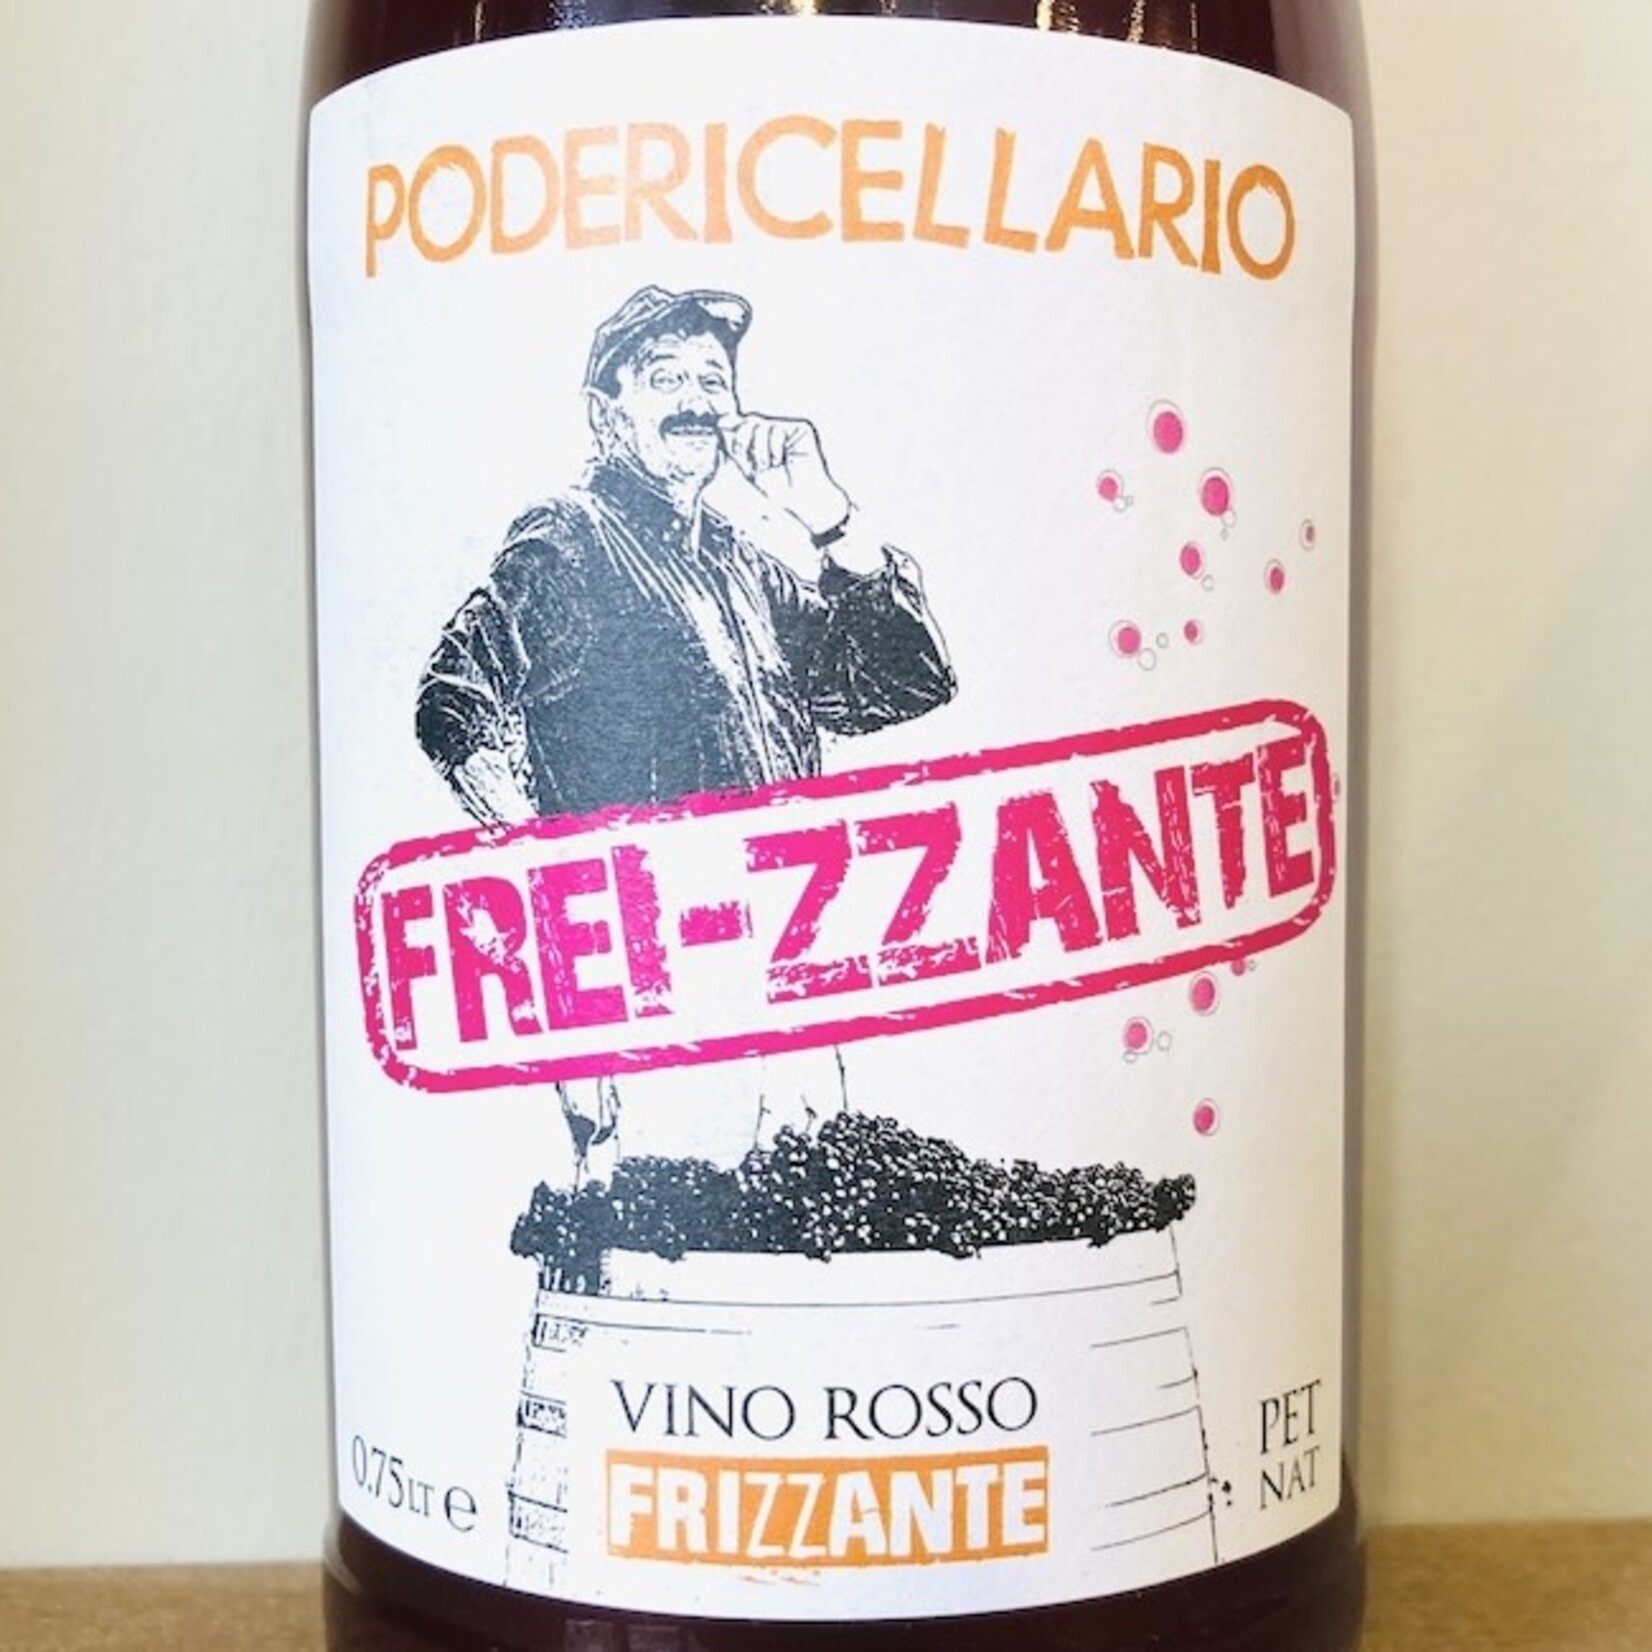 Italy 2022 Cellario Frei-zzante Vino Rosso Frizzante